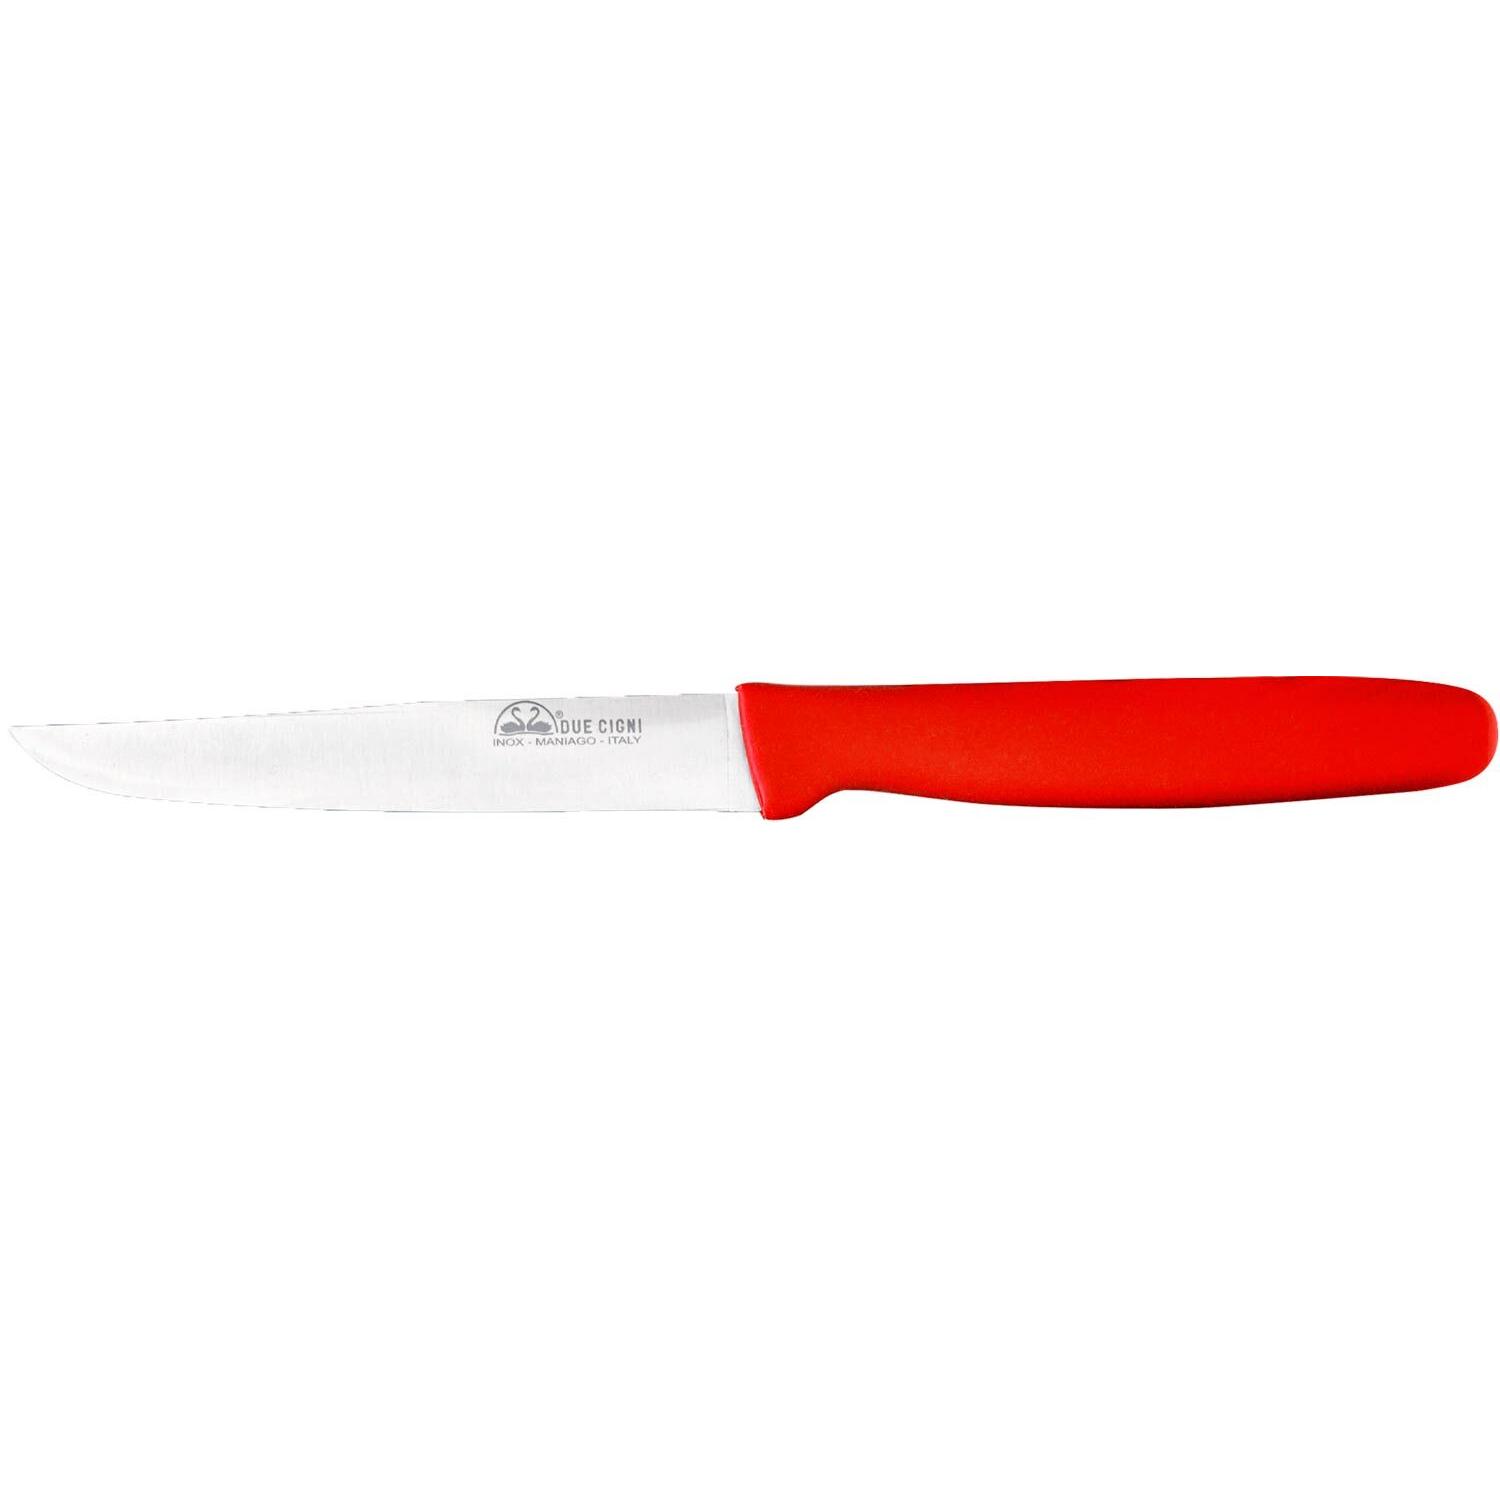 Нож кухонный Due Cigni Steak 110 мм. Цвет - красный 2C 713/11 R 1904.00.73